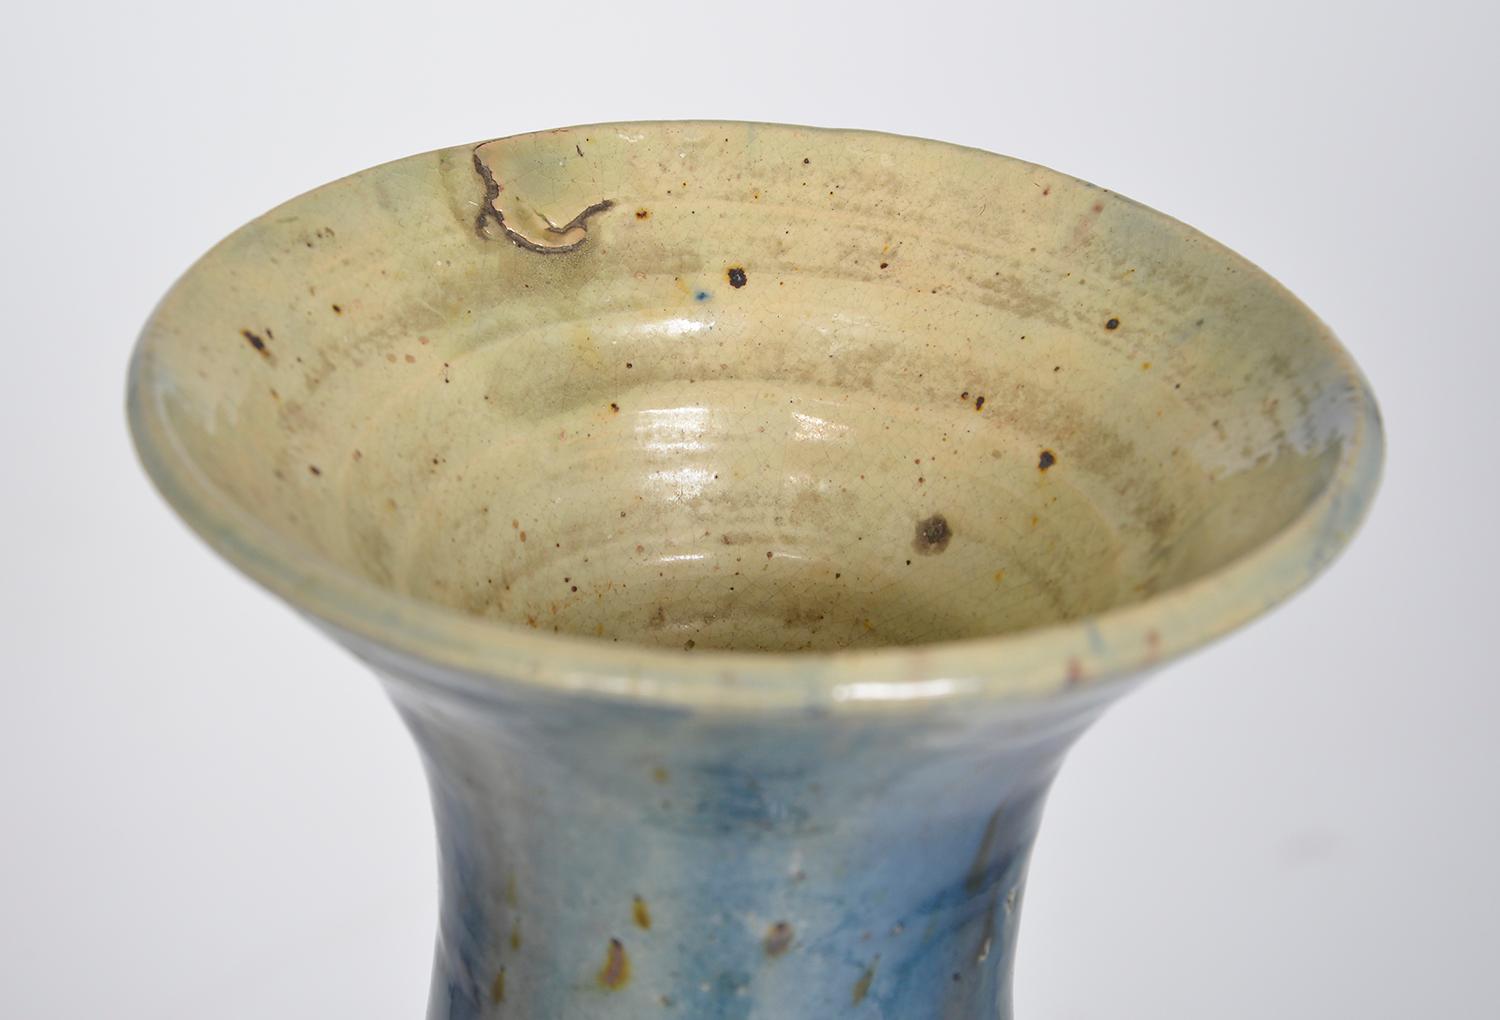 Flemish Studio Pottery Art Nouveau Drip Glazed Earthenware Vase 1900s Folk Art For Sale 6